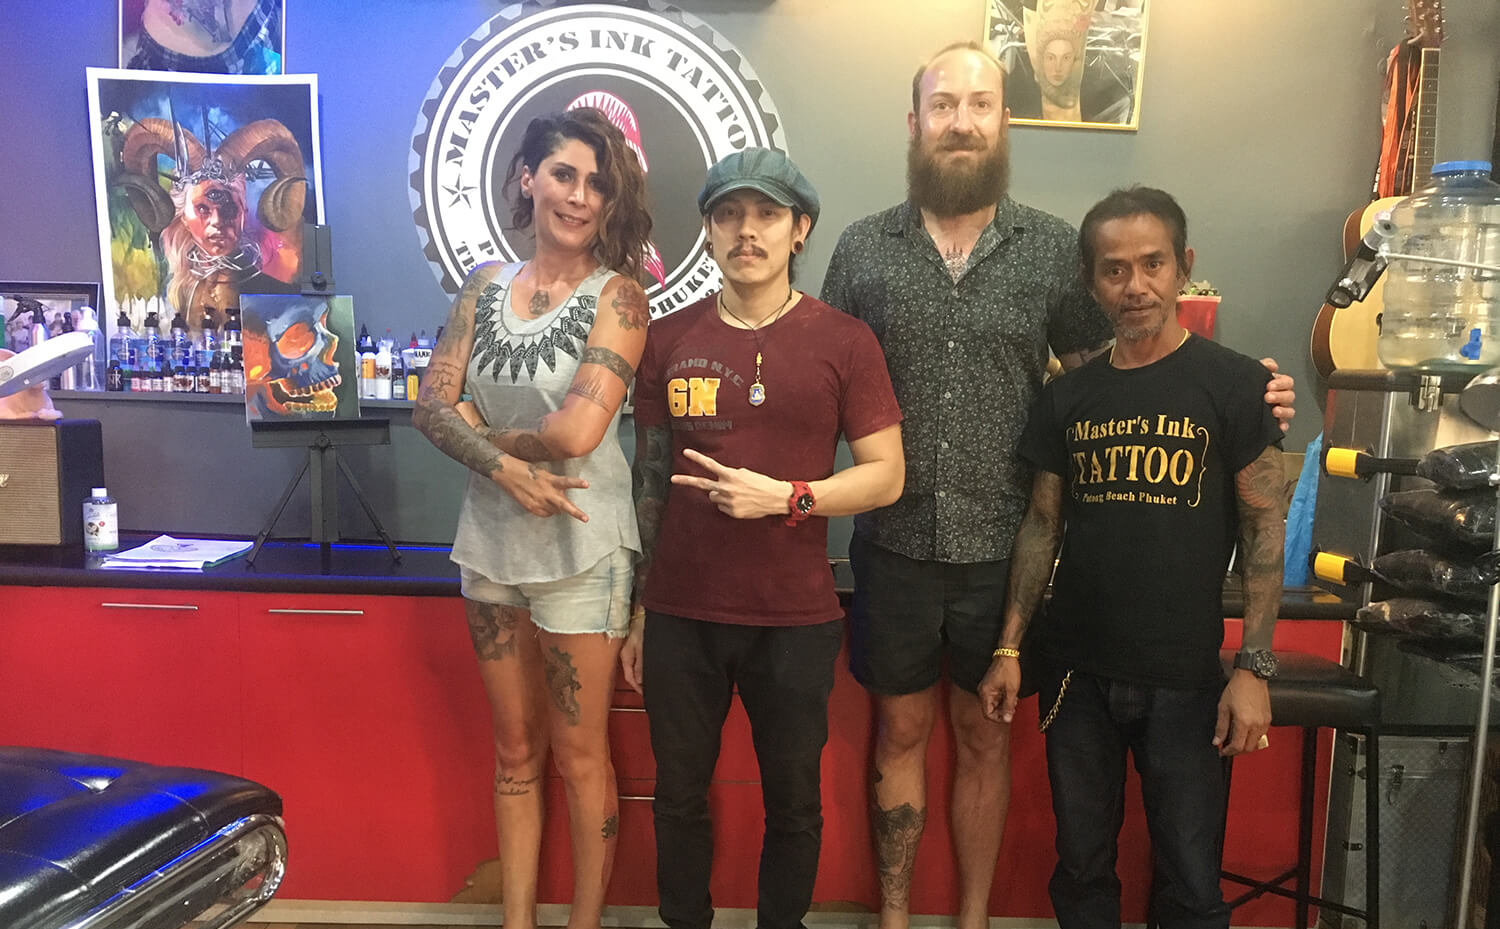 Master's Ink Tattoo, Phuket, Thailand – Amazon Dövme